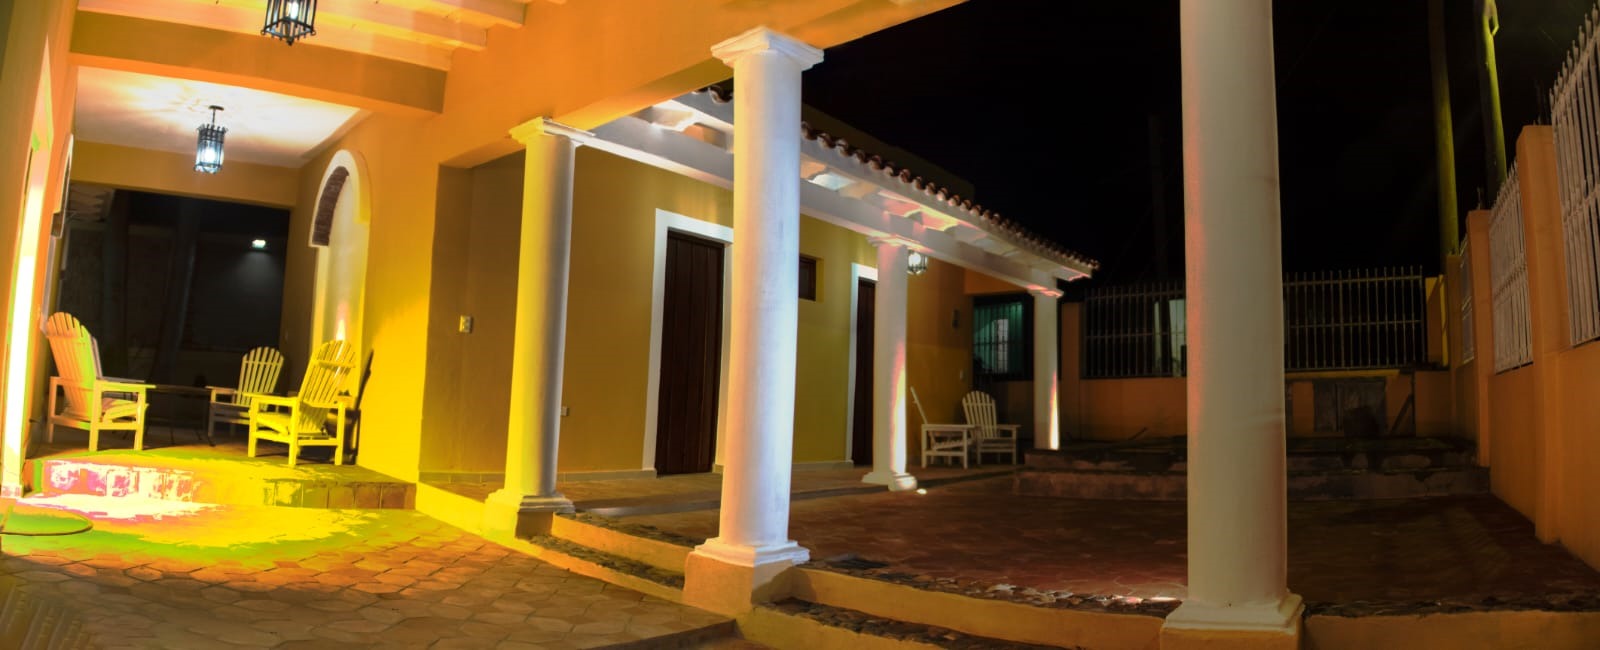 villa italia trinidad cuba